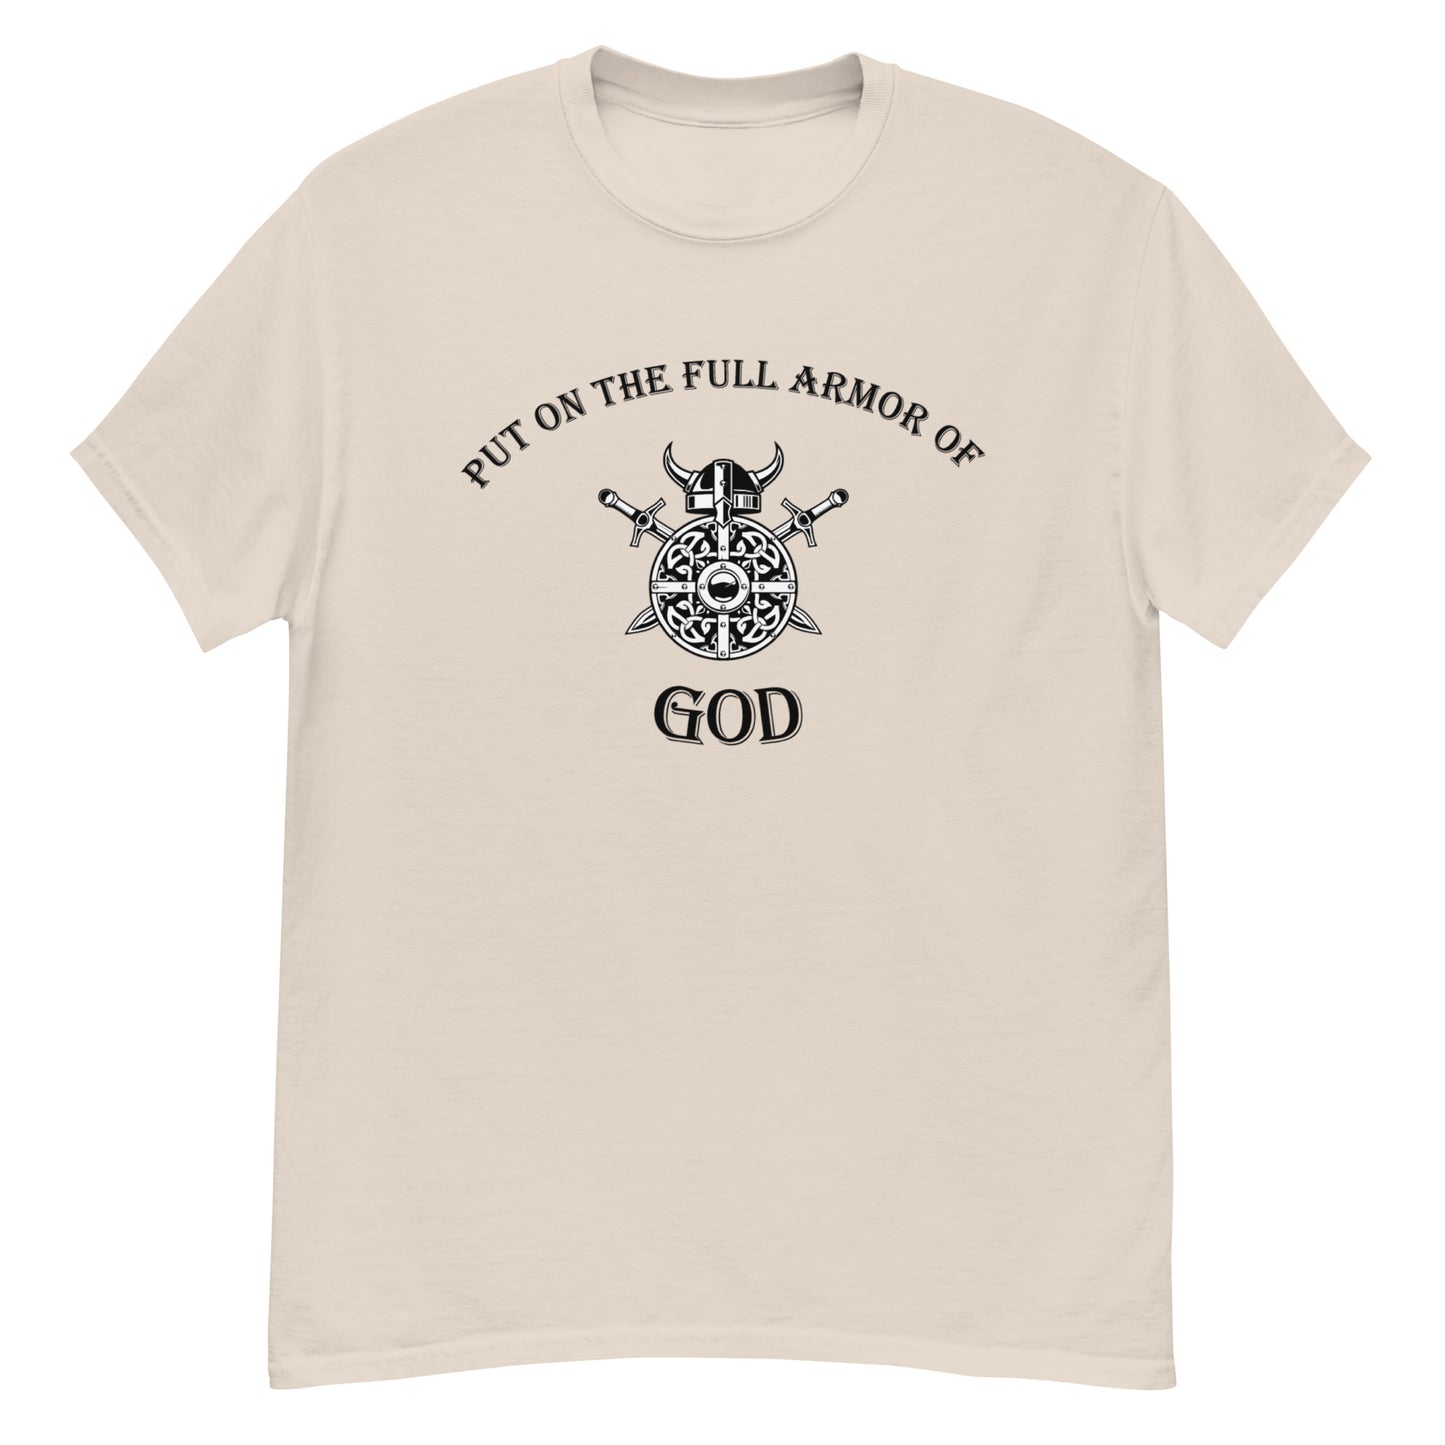 Put on the Full Armor of God t-shirt